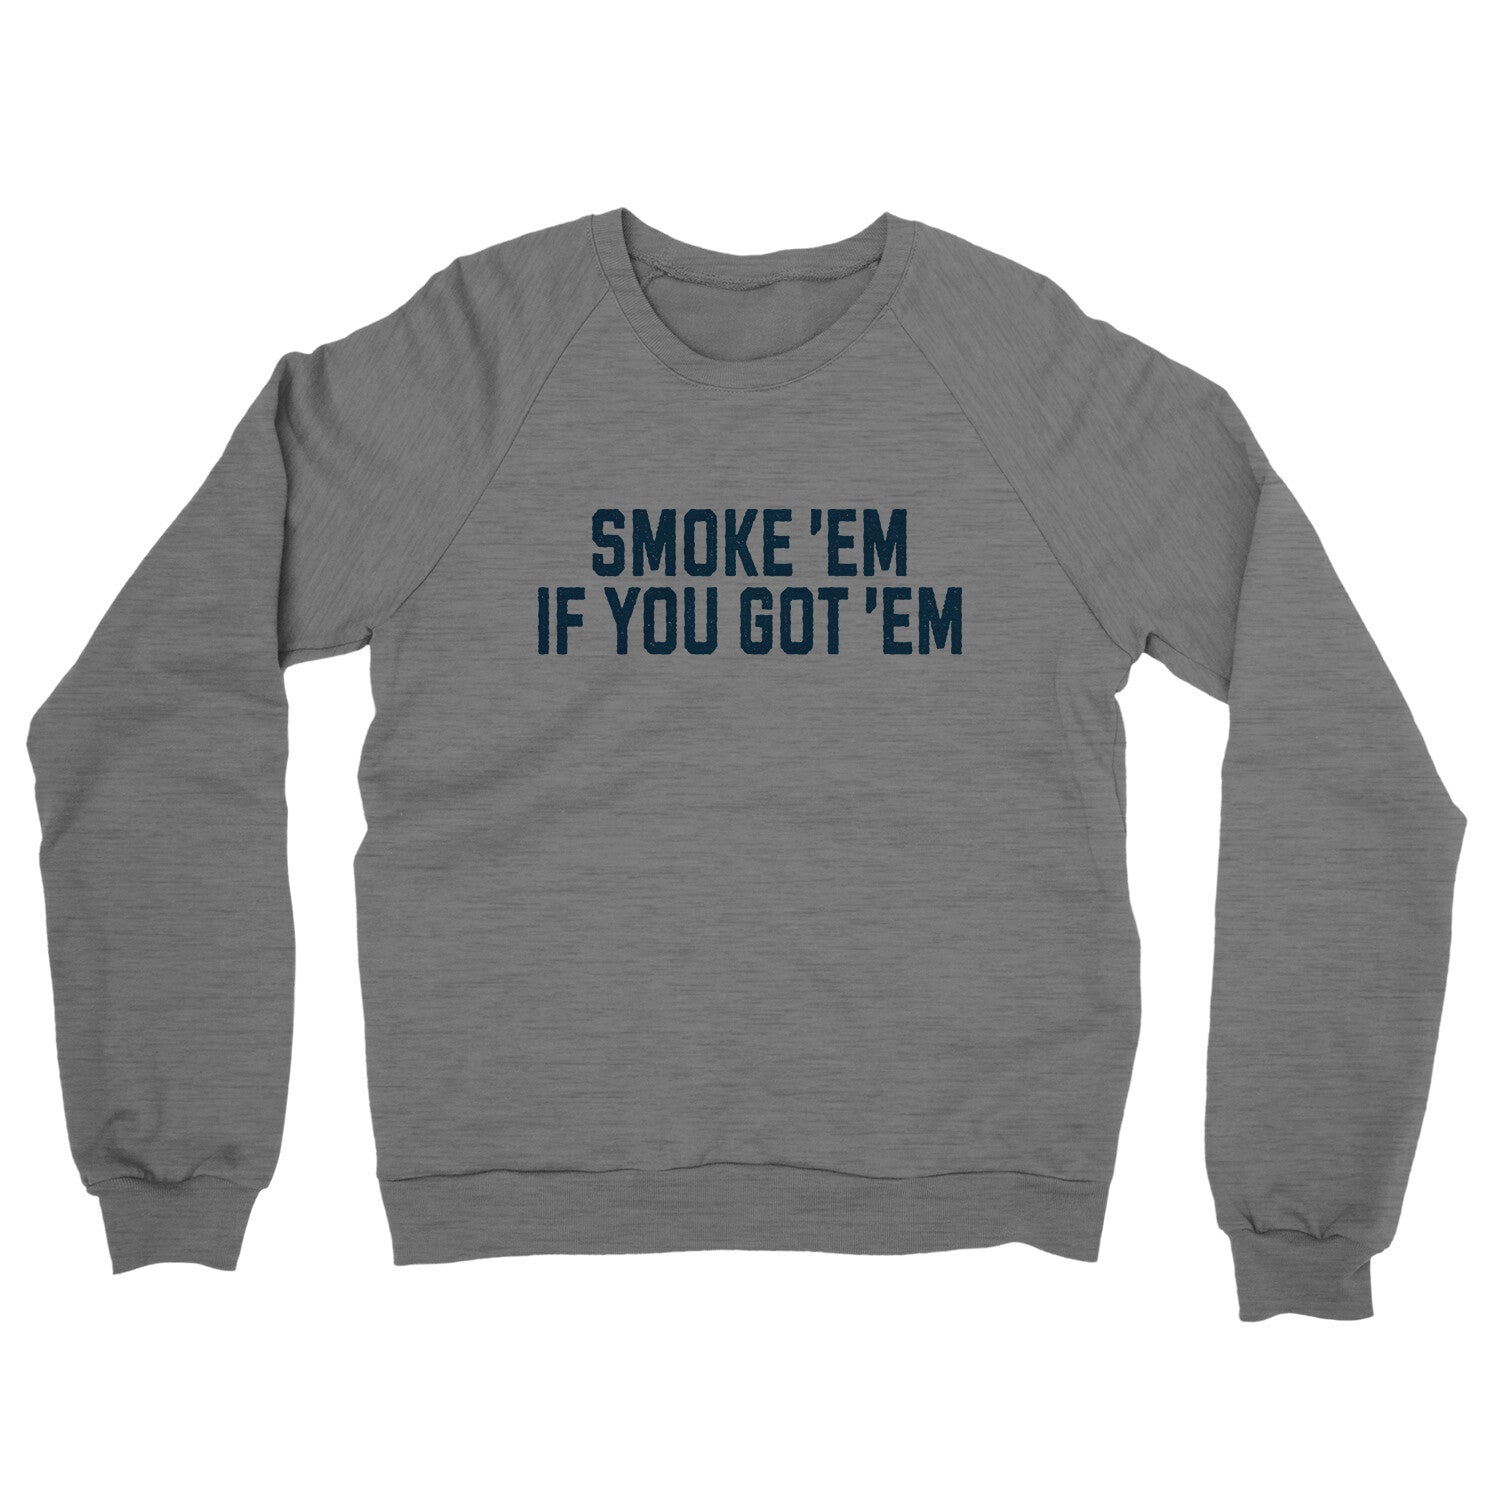 Smoke ‘em If you Got ‘em in Graphite Heather Color